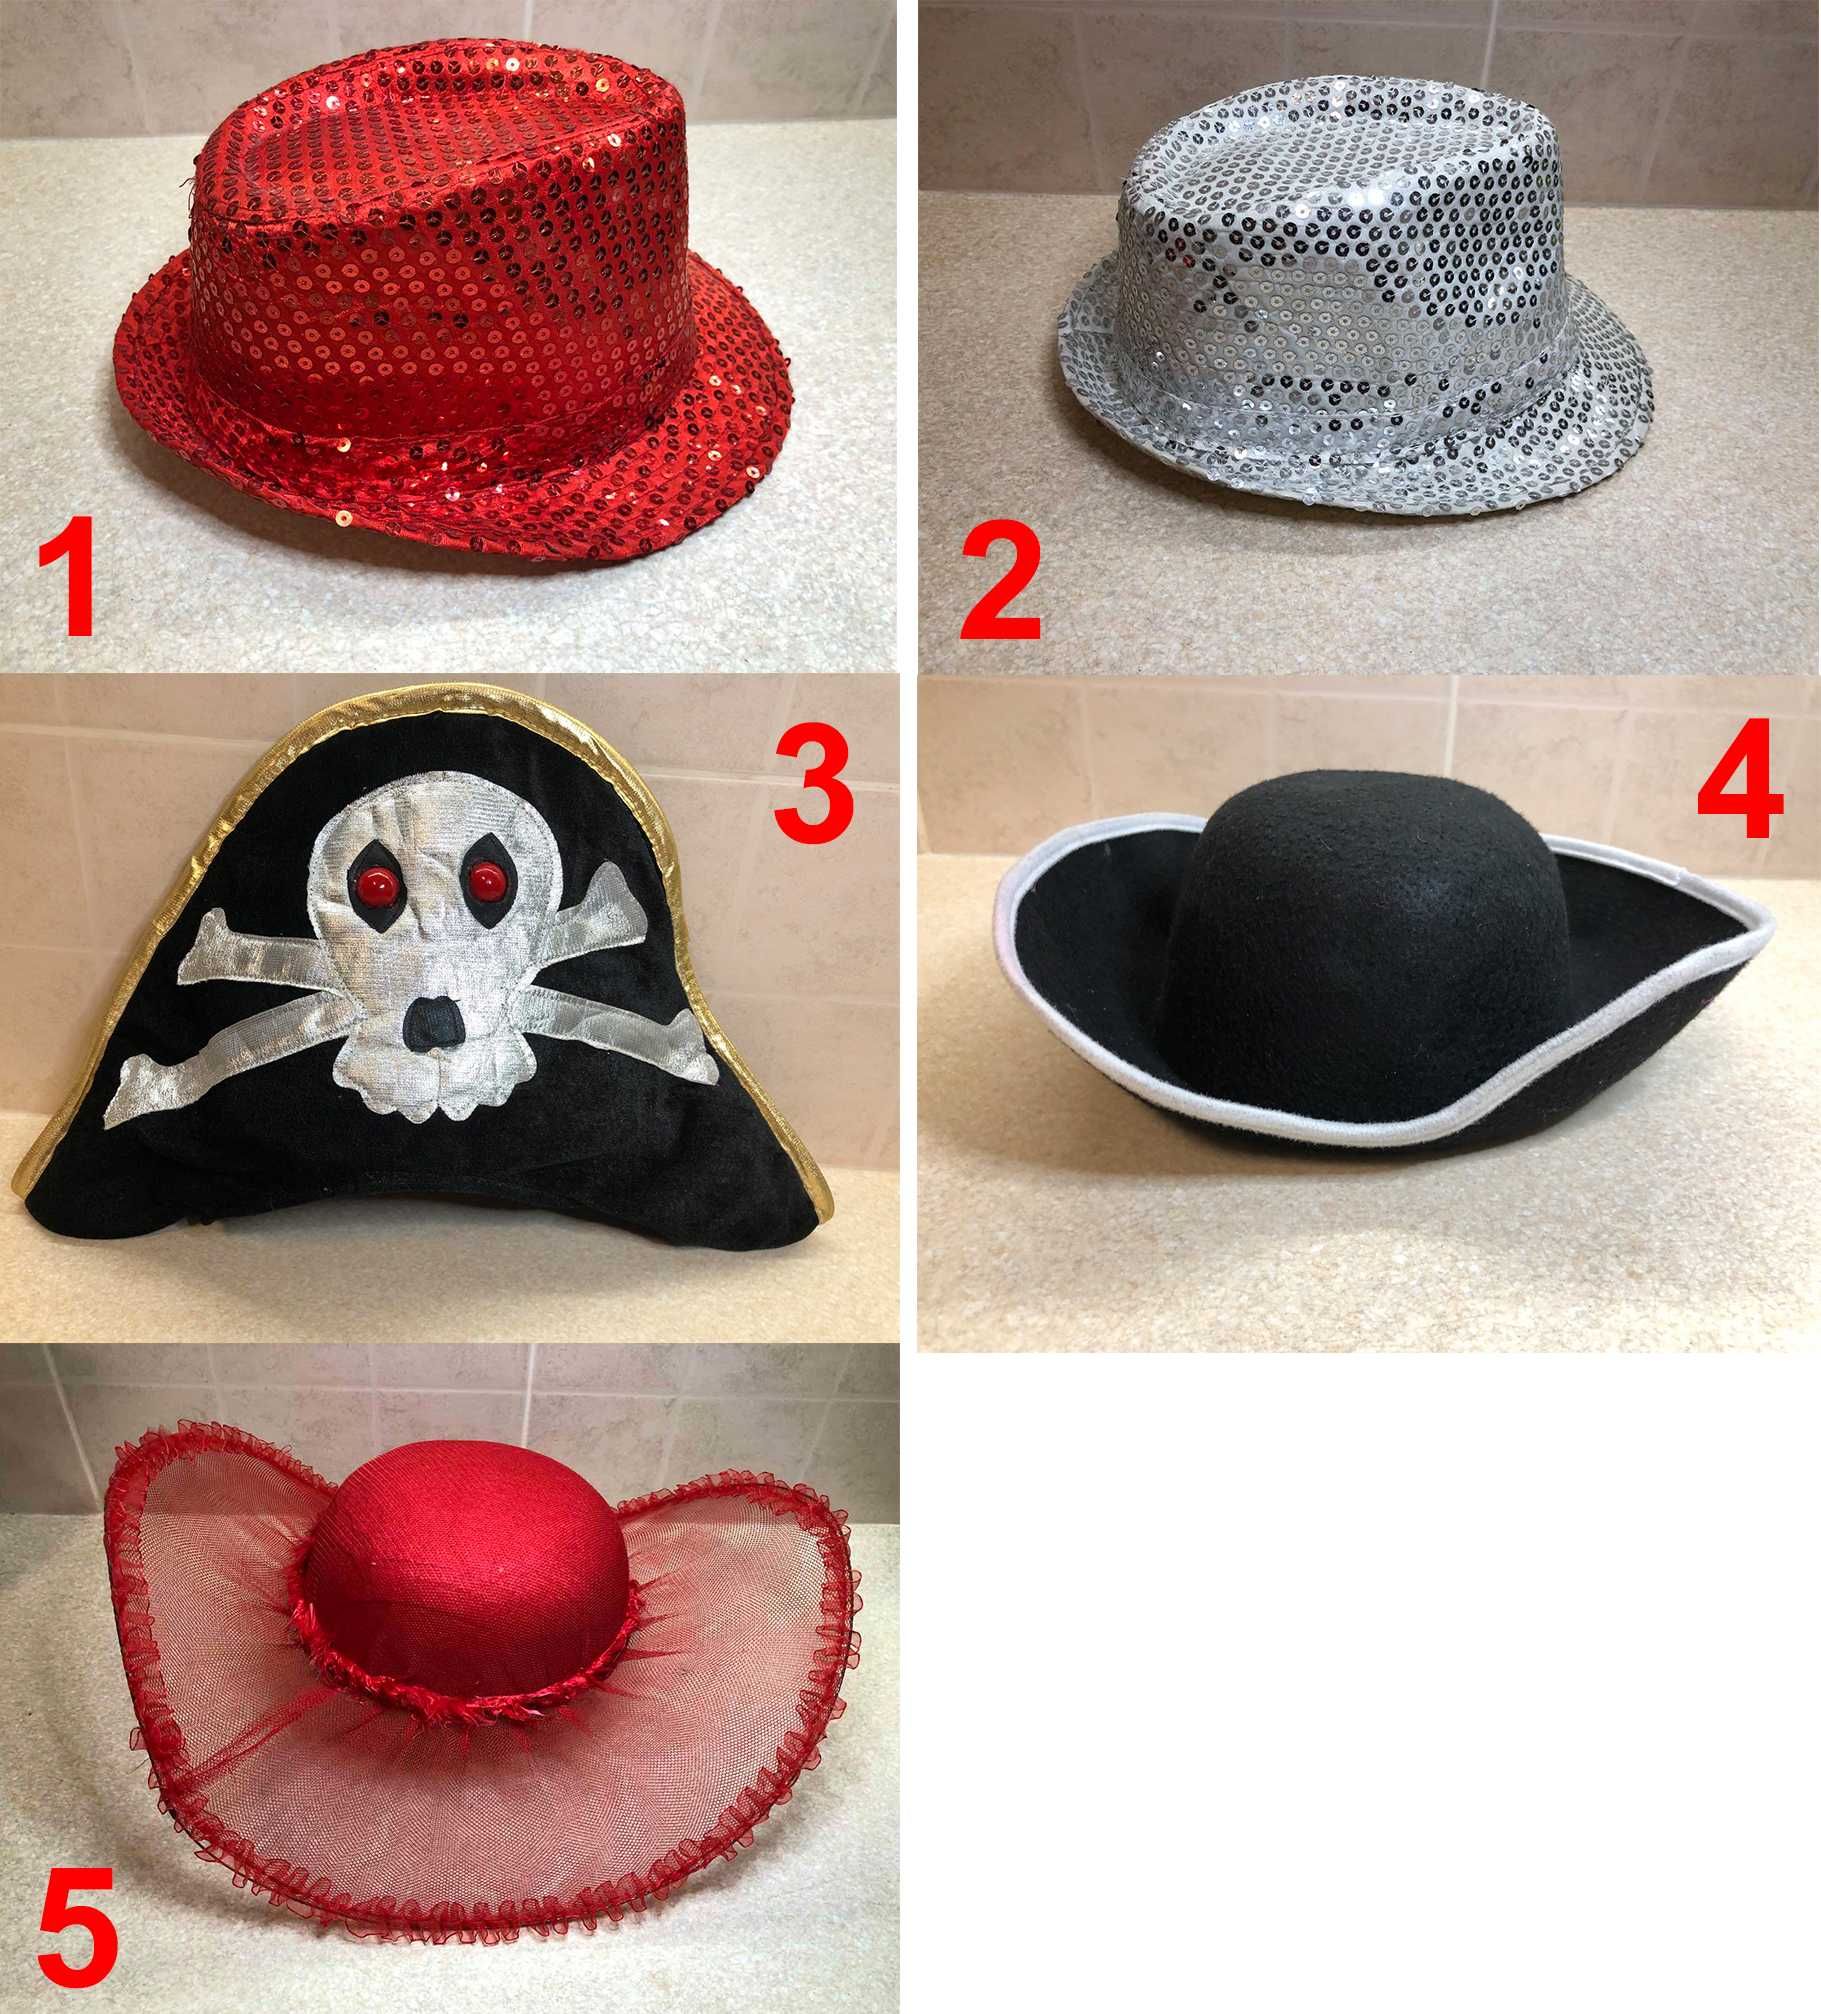 Карнавальная шляпа (пайетки, пират, дама)